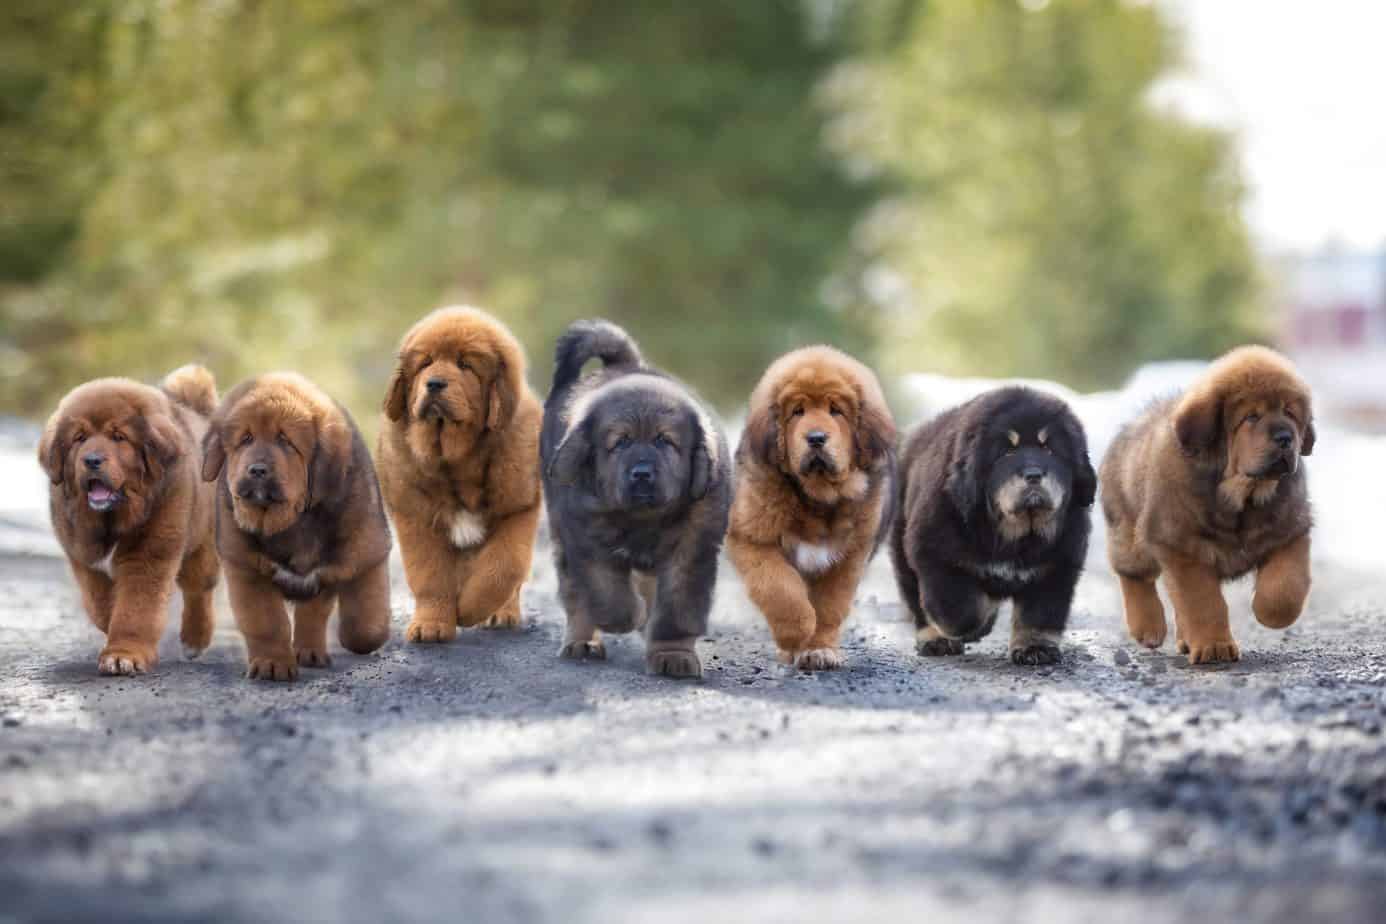 Seven tibetan mastiff puppies running on the road